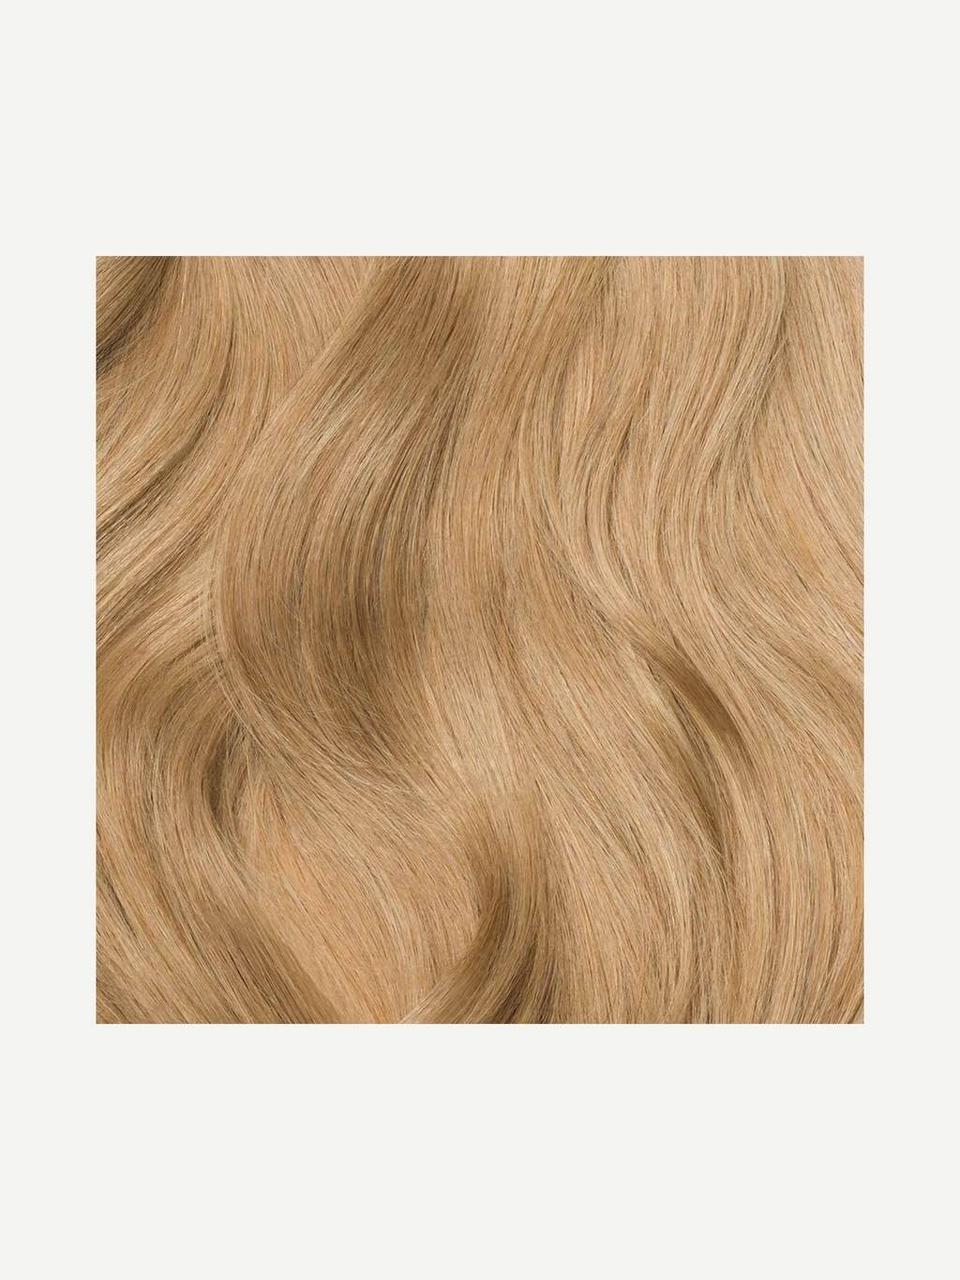 Волосся для нарощування Luxy Hair Dirty Blonde 18 натуральне 180 грамм (в упаковке)